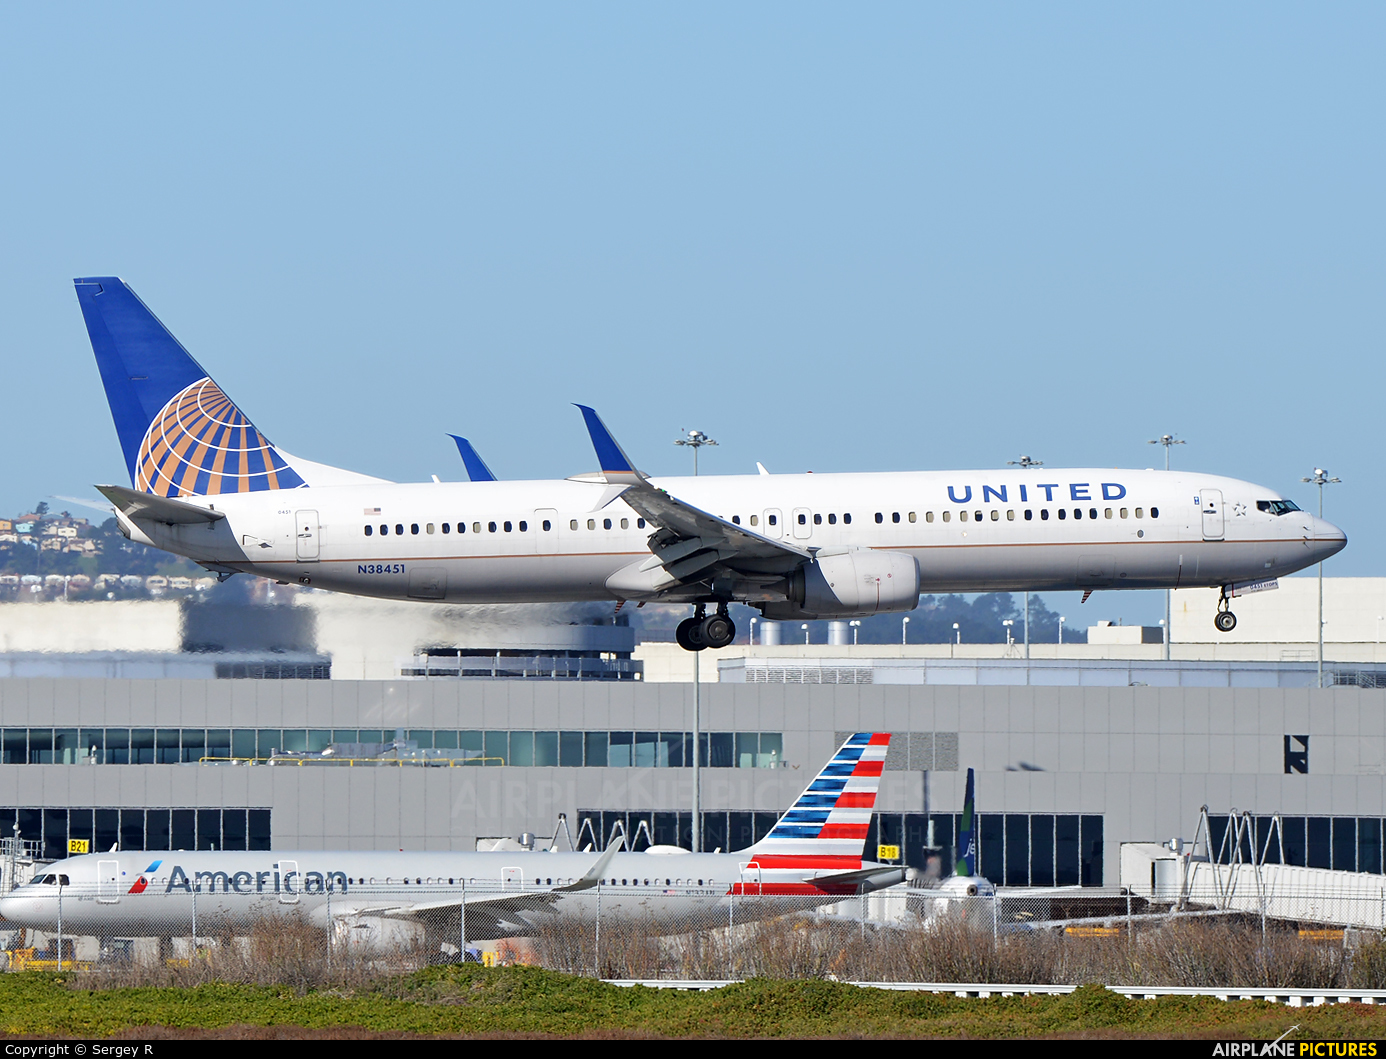 United Airlines N38451 aircraft at San Francisco Intl